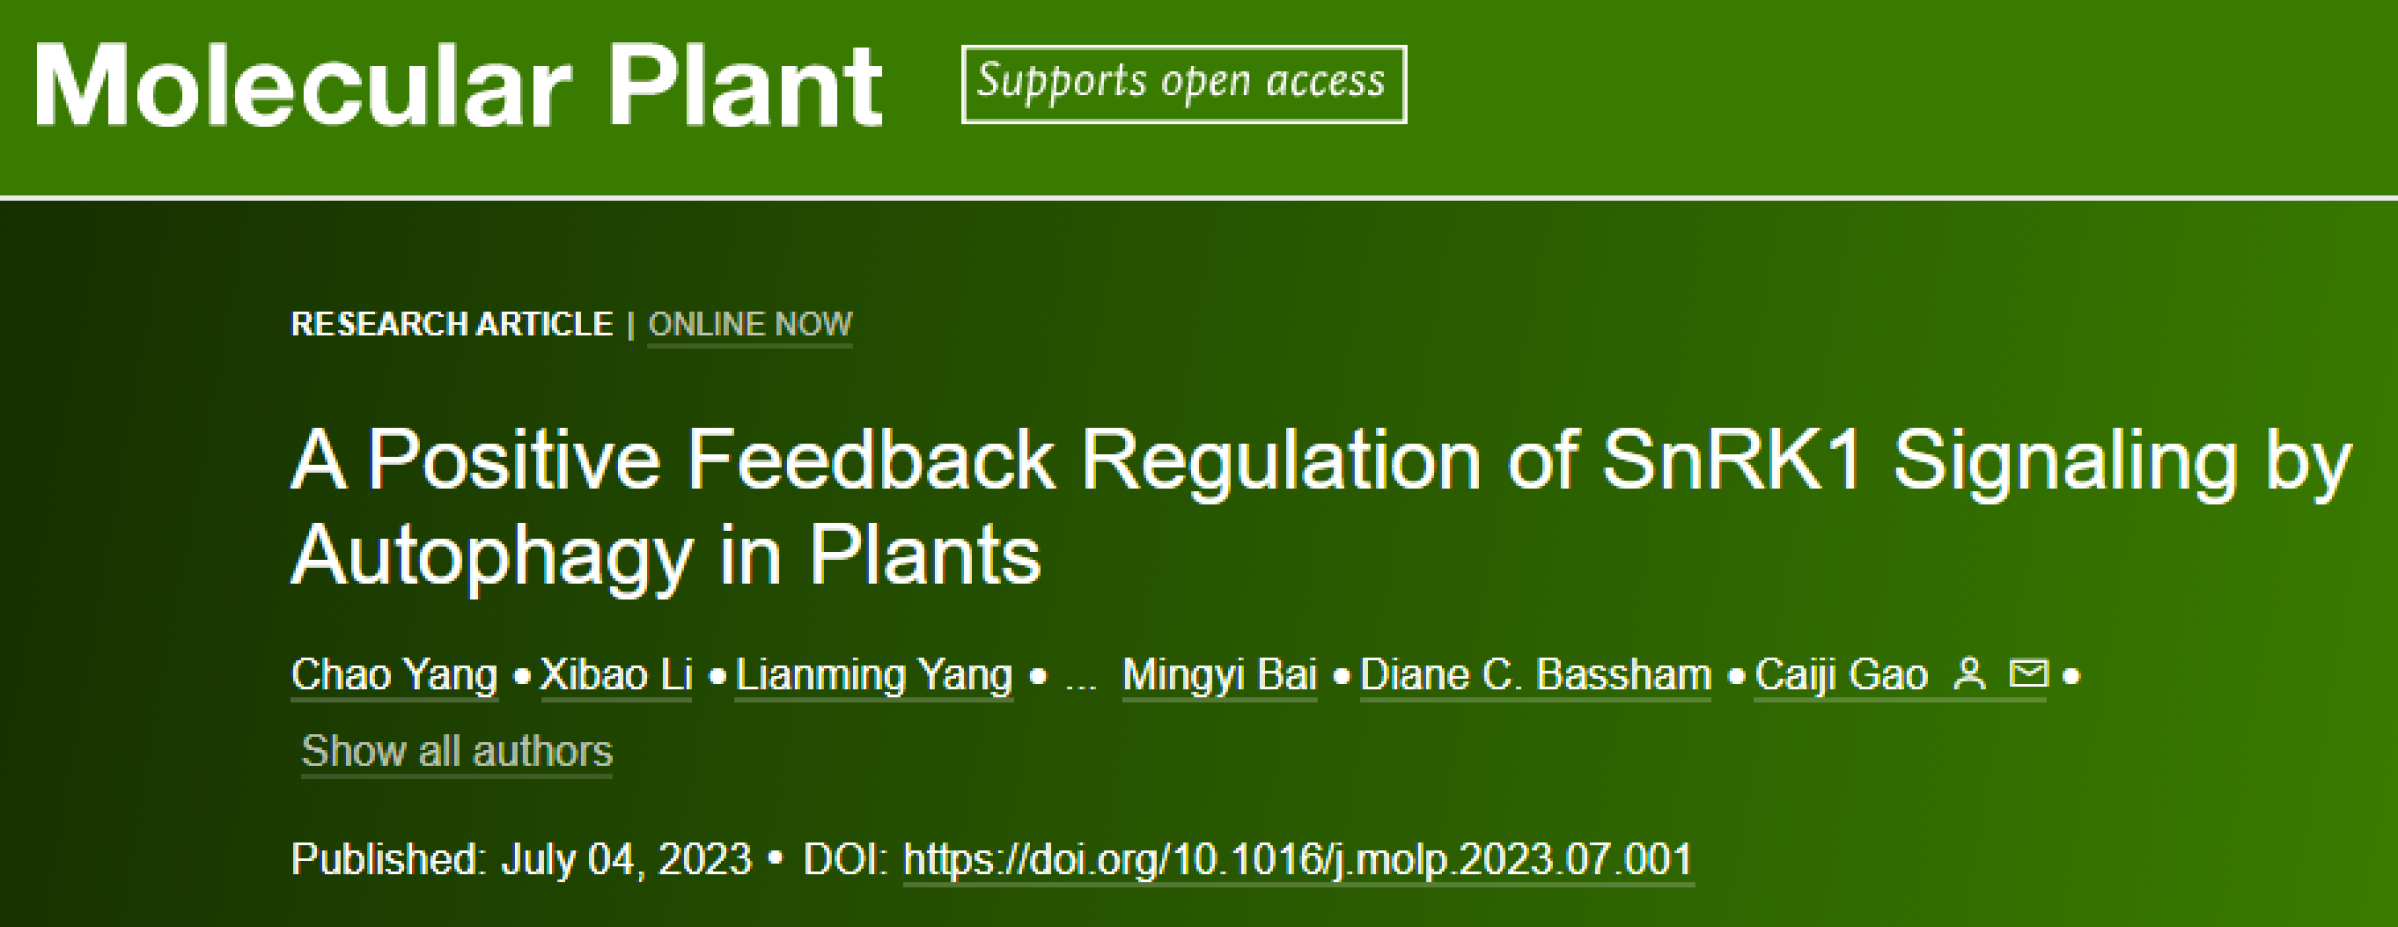 生命科学学院高彩吉课题组在Molecular Plant发表重要研究结果